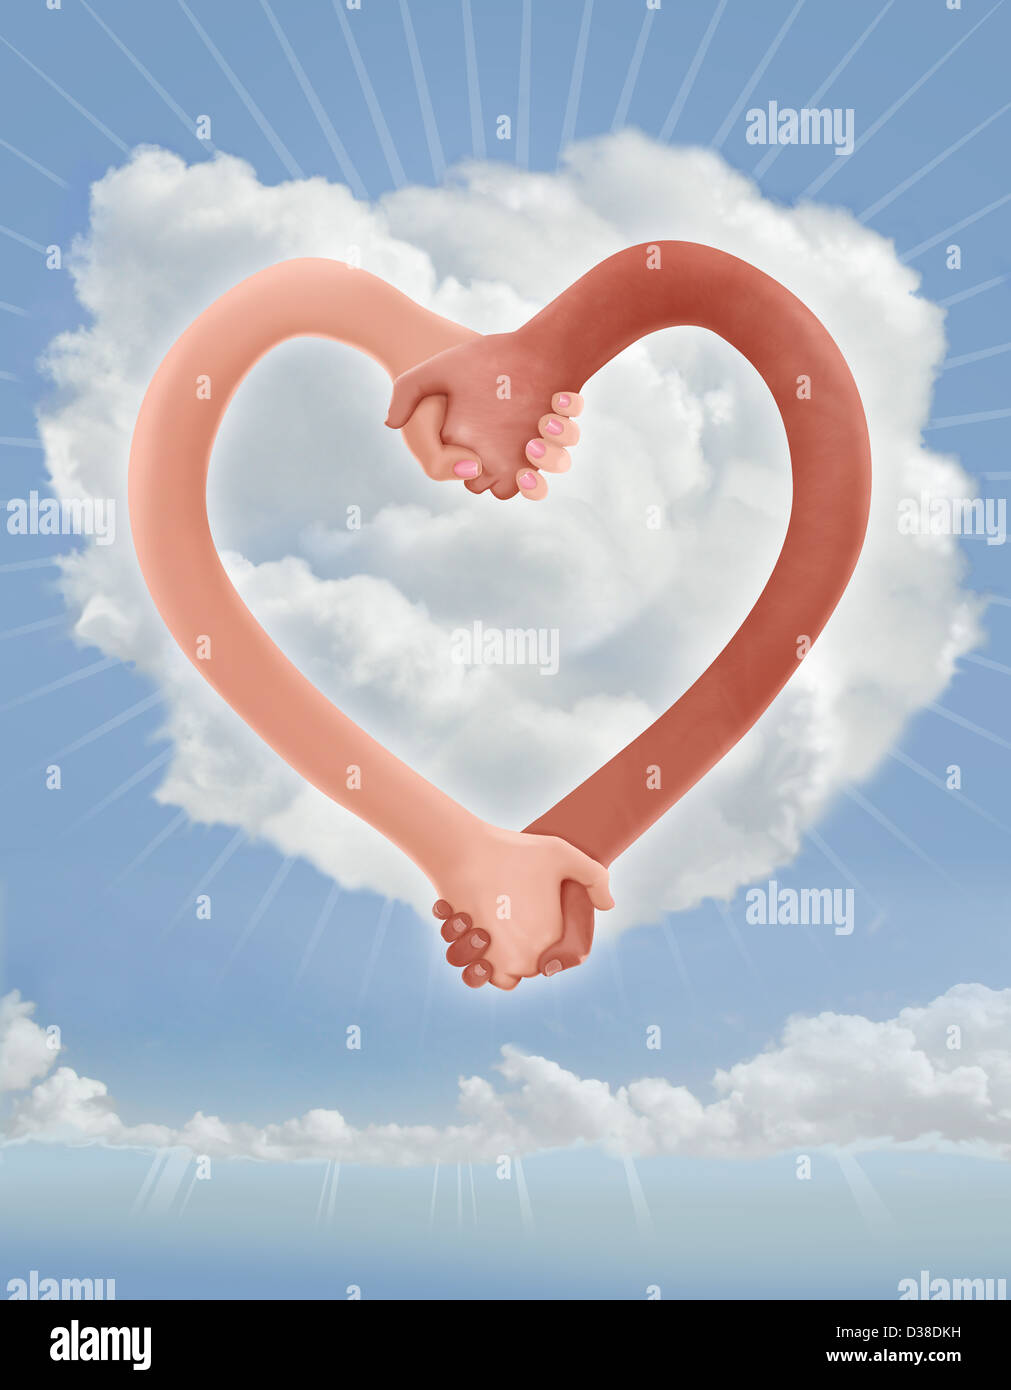 Image d'illustration des mains en forme de coeur représentant le collage de couple Banque D'Images